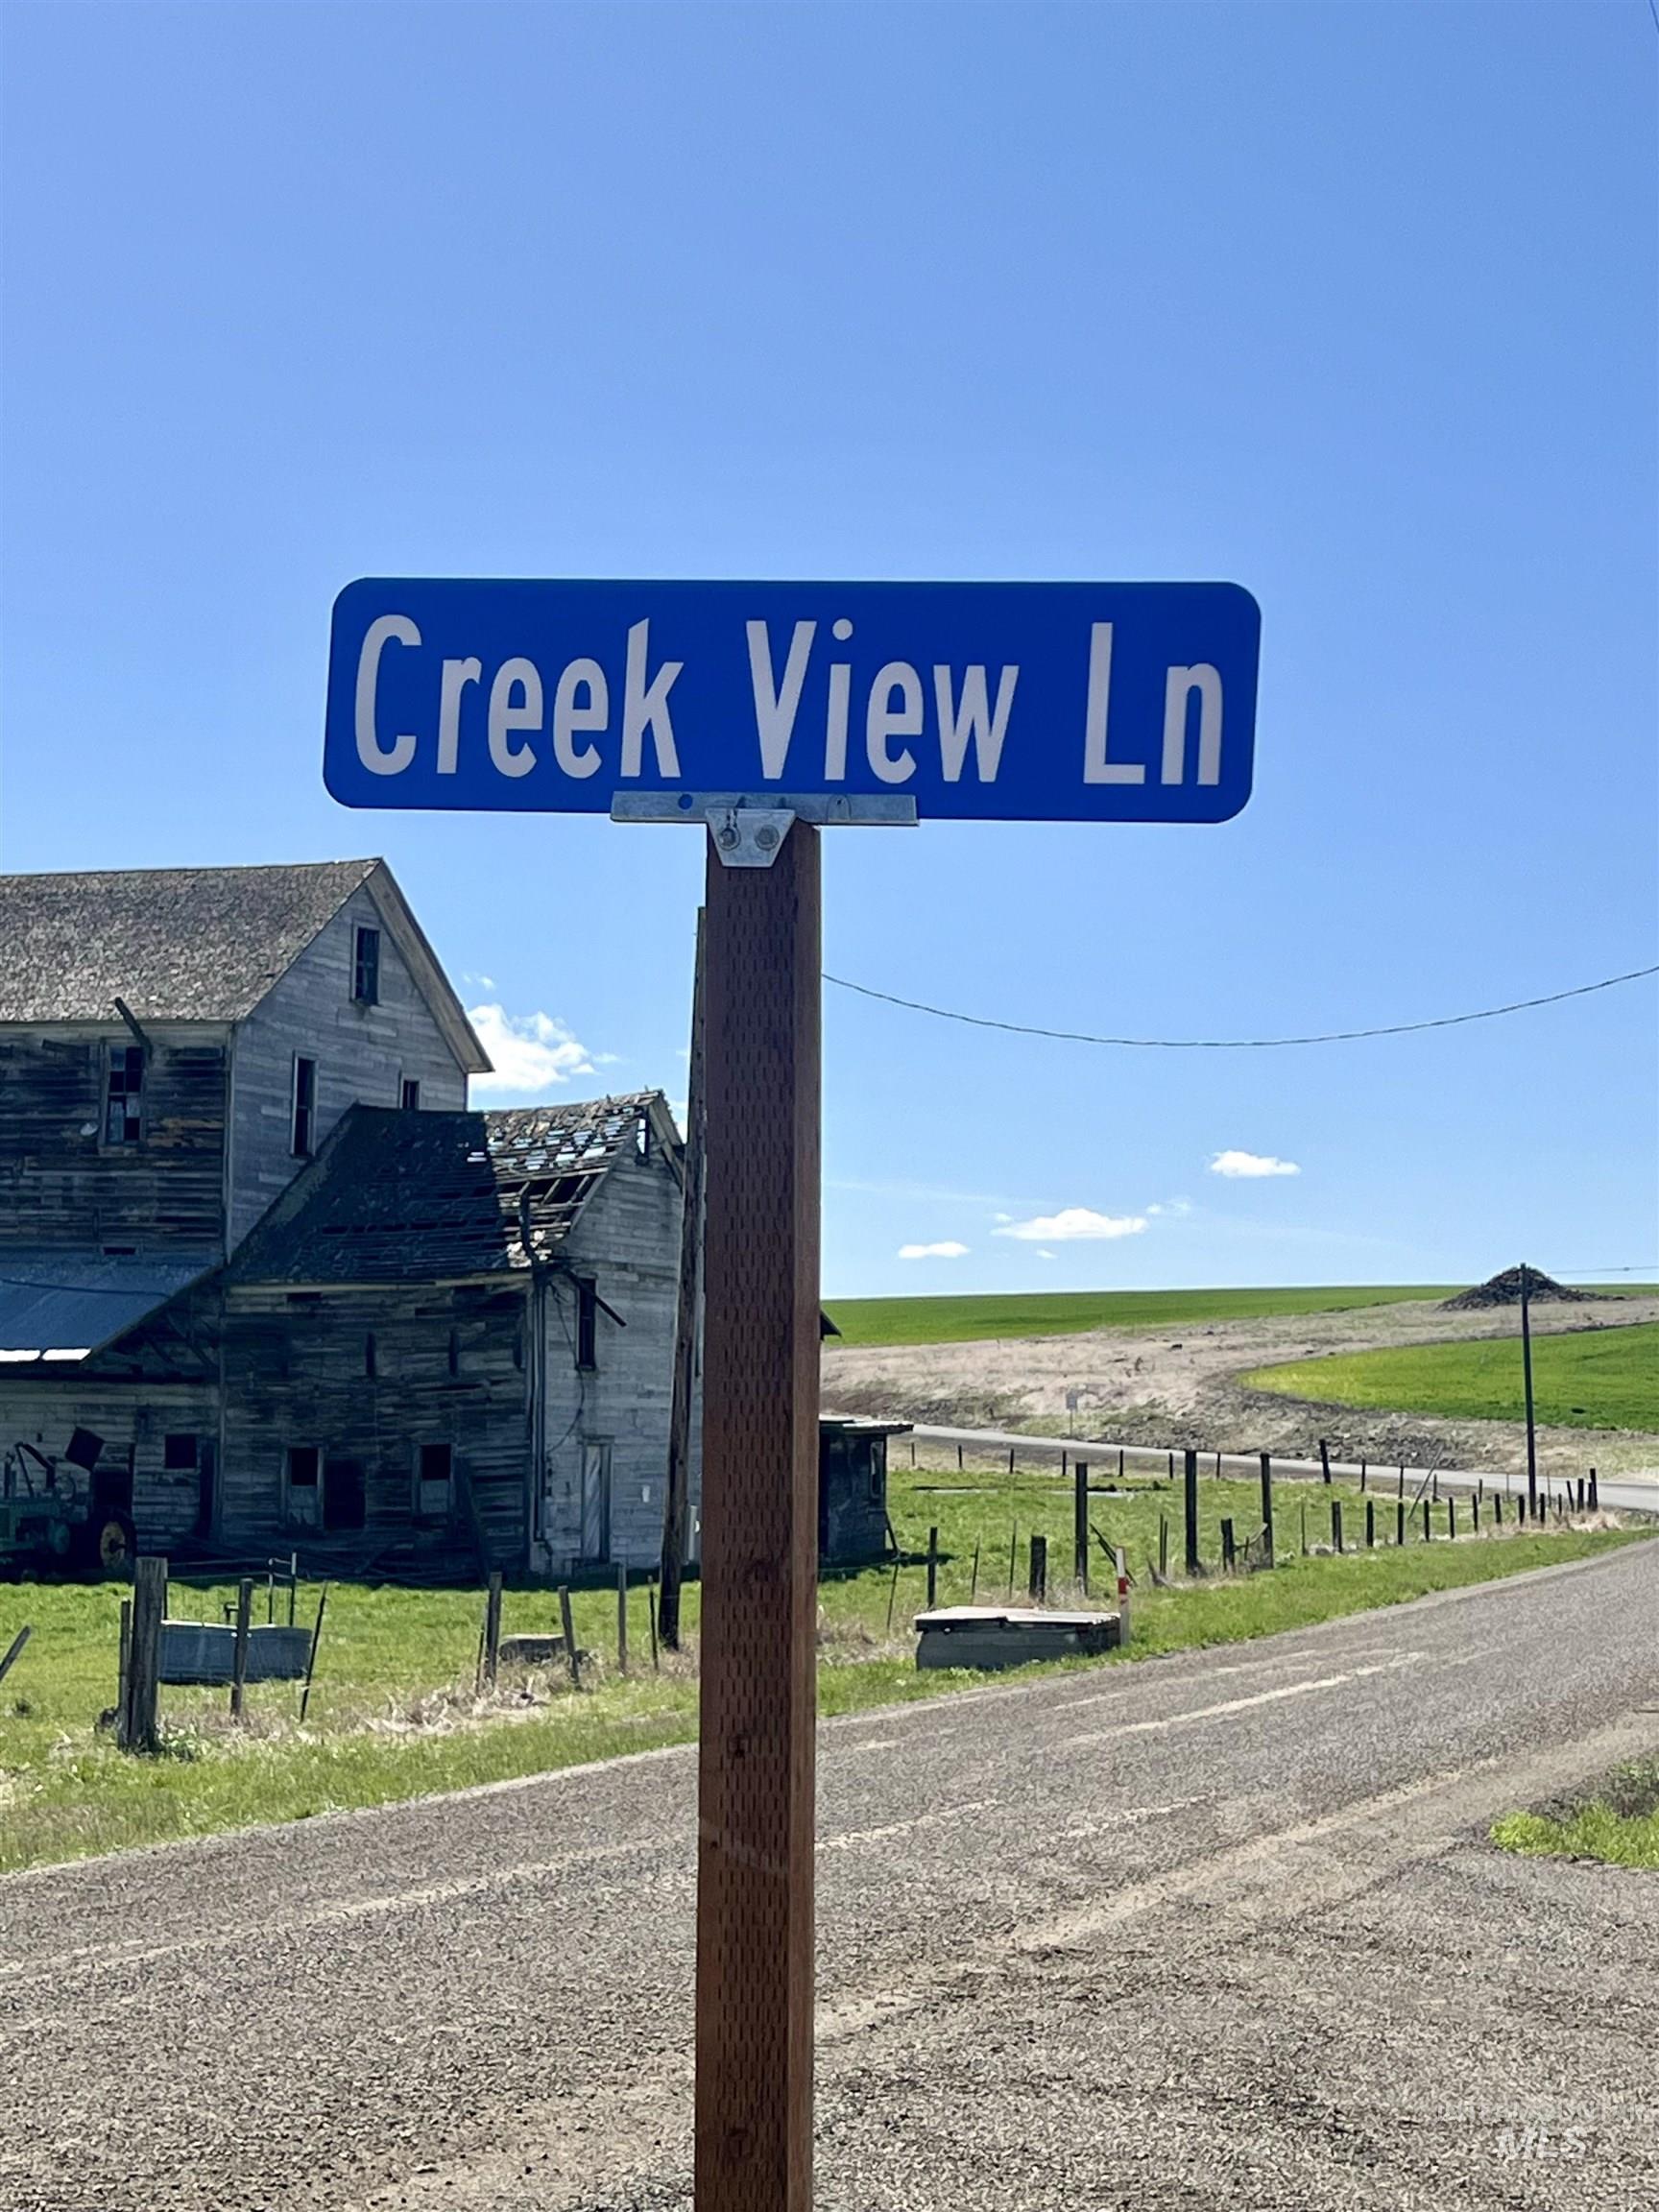 TBD Creek View Lane - Lot 6, Grangeville, Idaho 83530, Land For Sale, Price $184,900,MLS 98907577